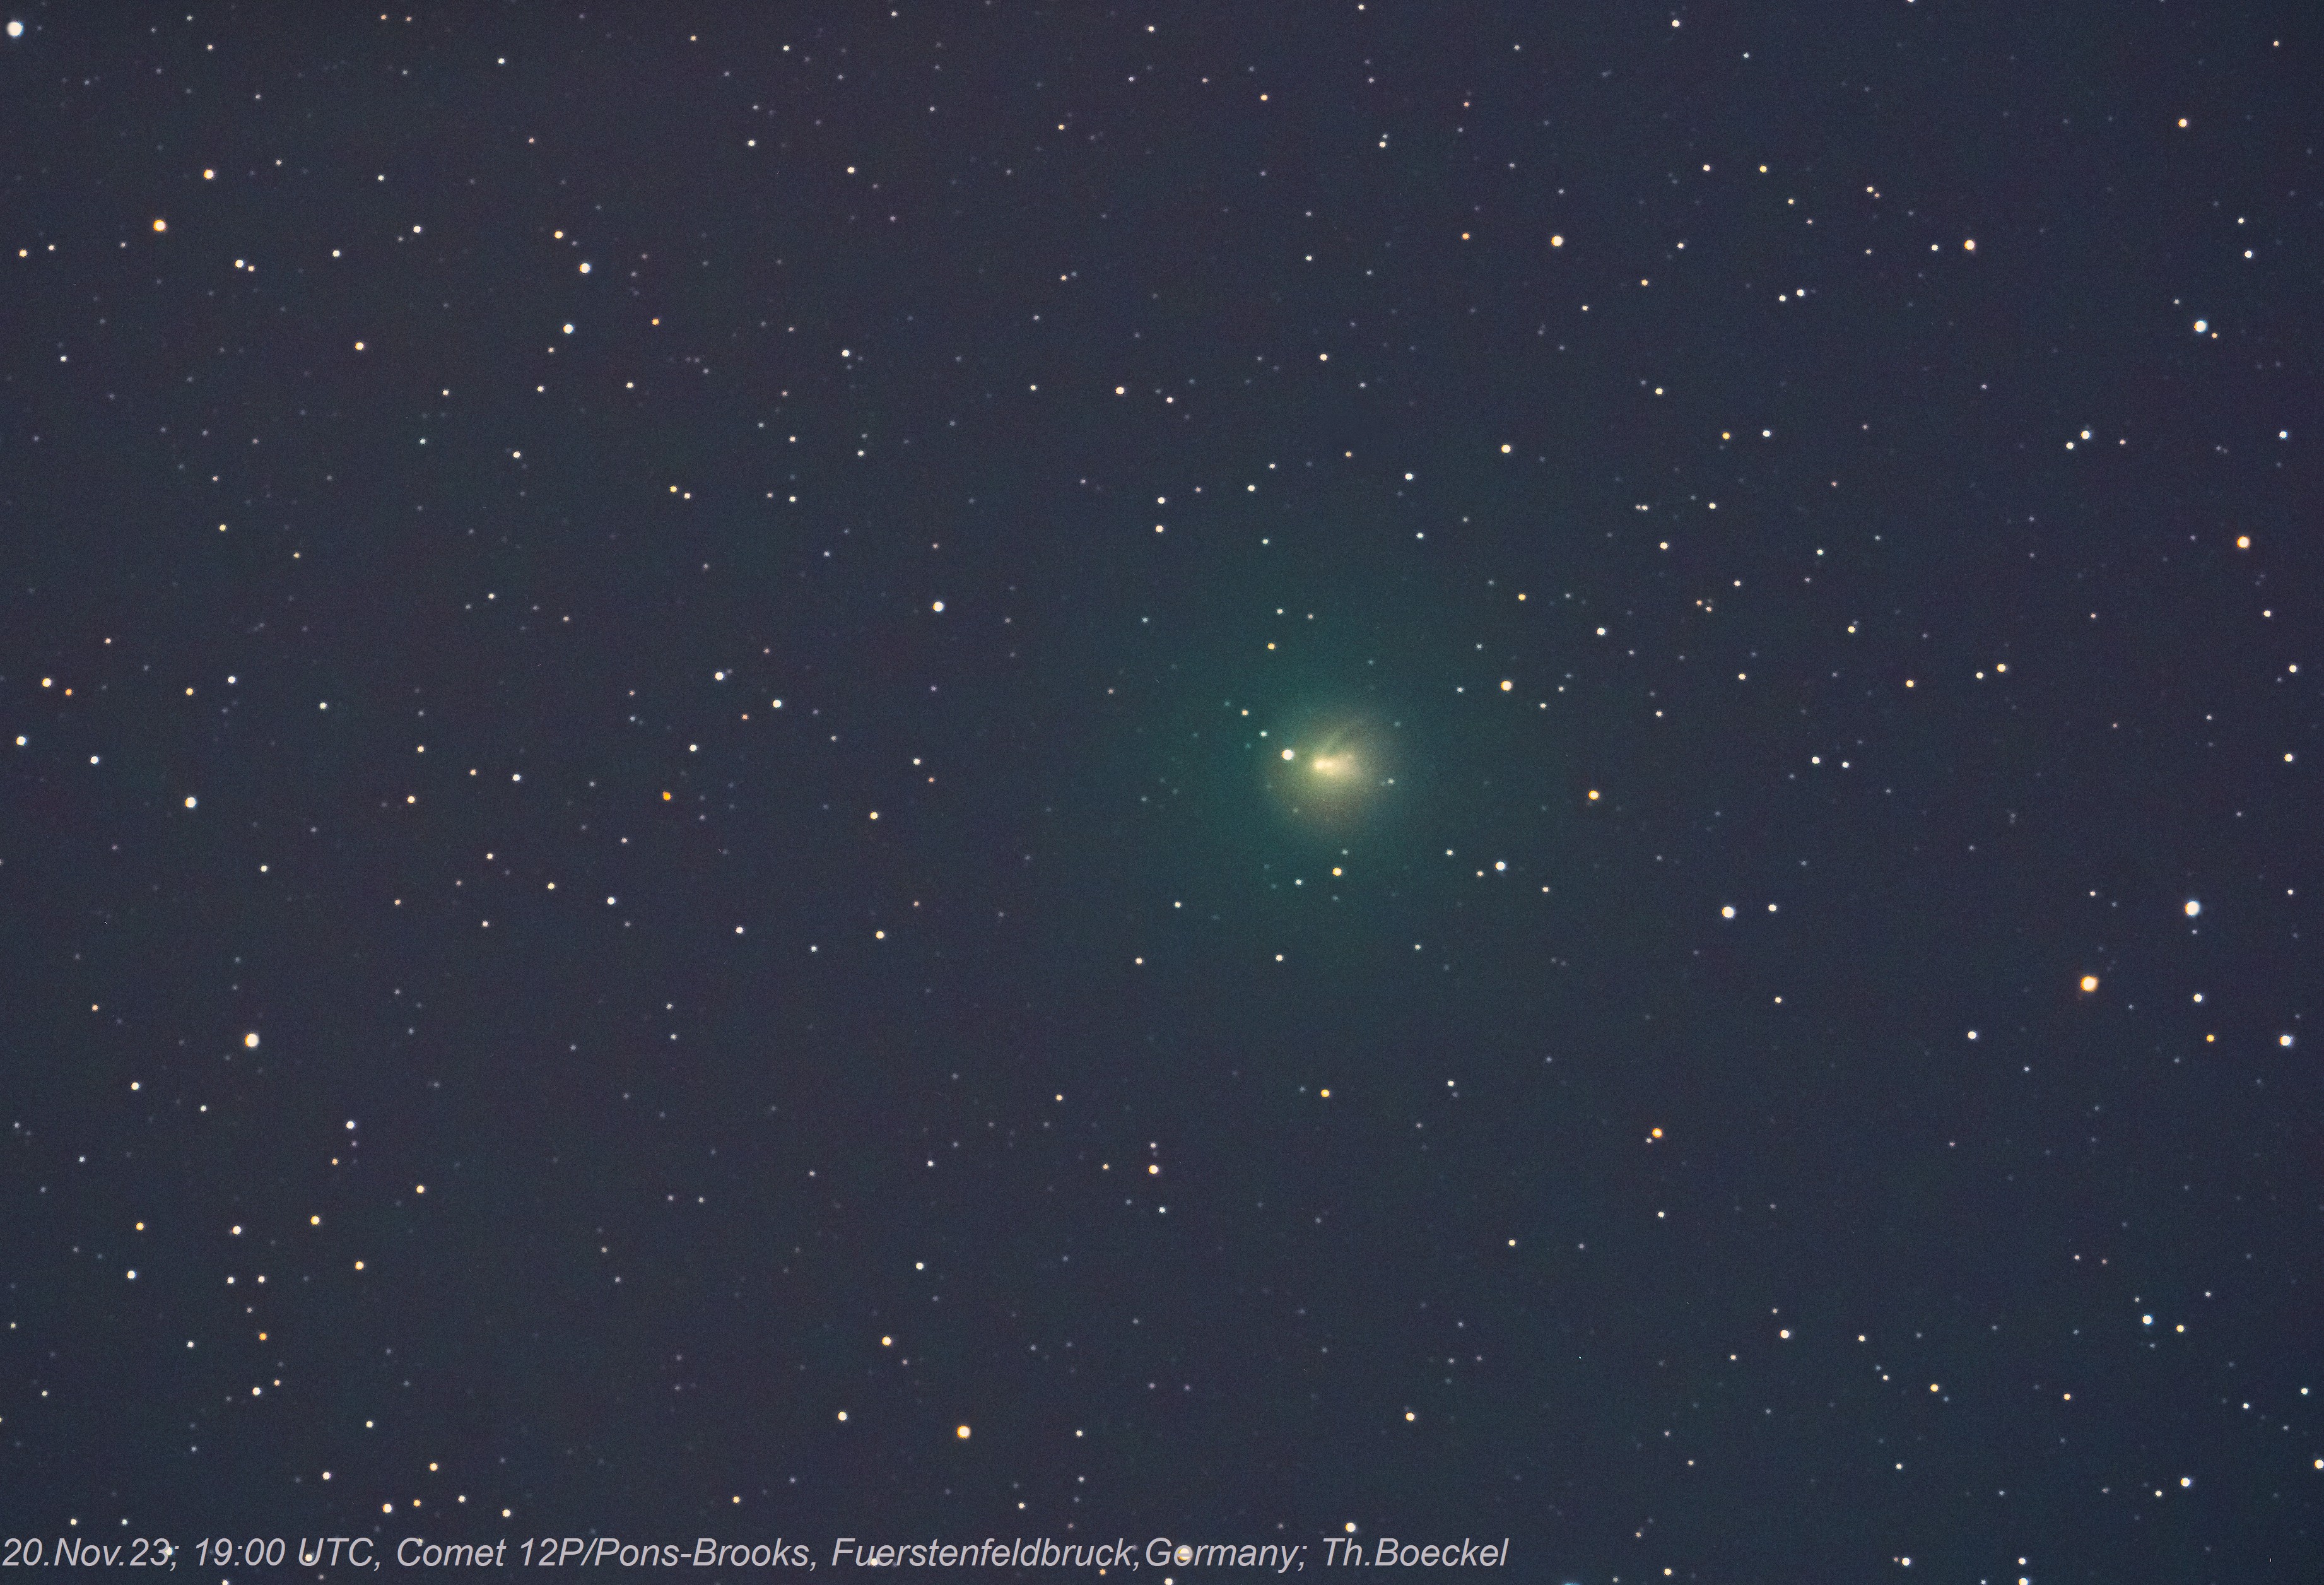 Comet 12P/Pons-Brooks by Boeckel